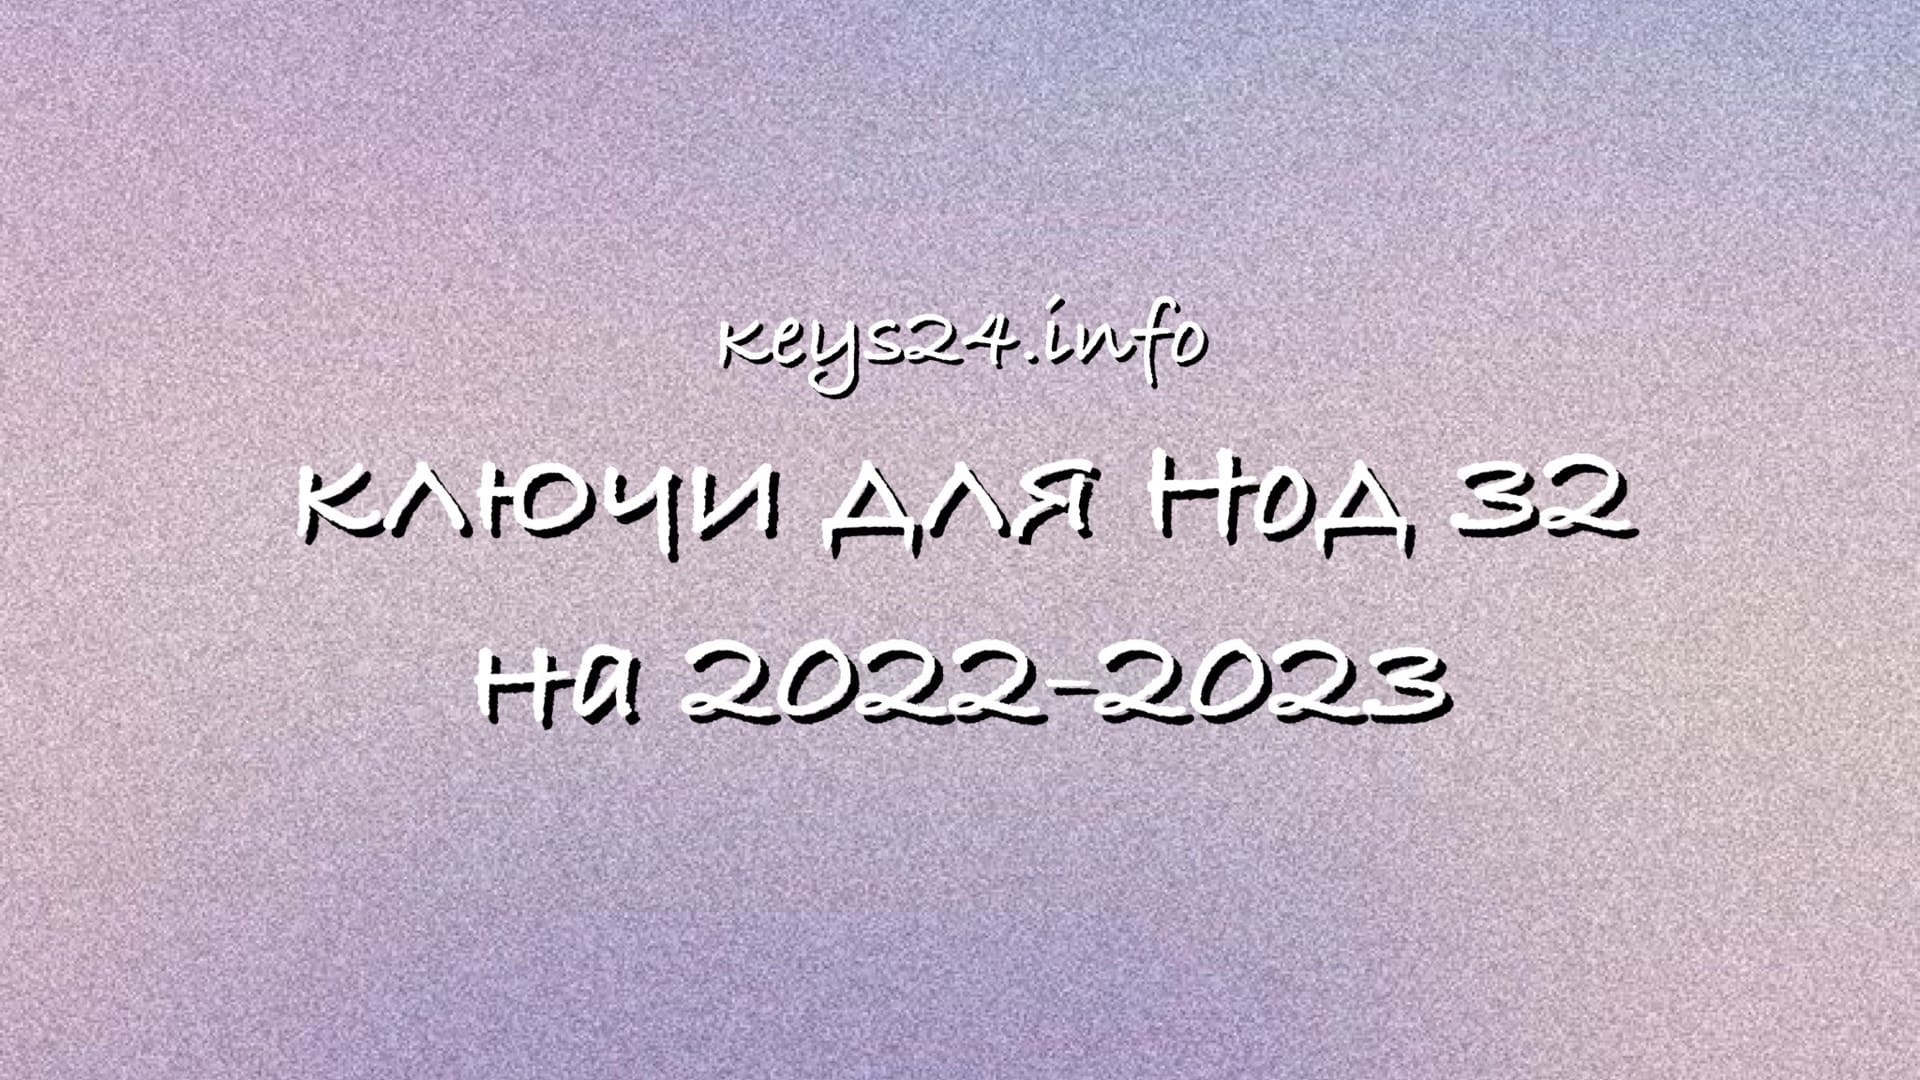 keysfornod32na2022-2023